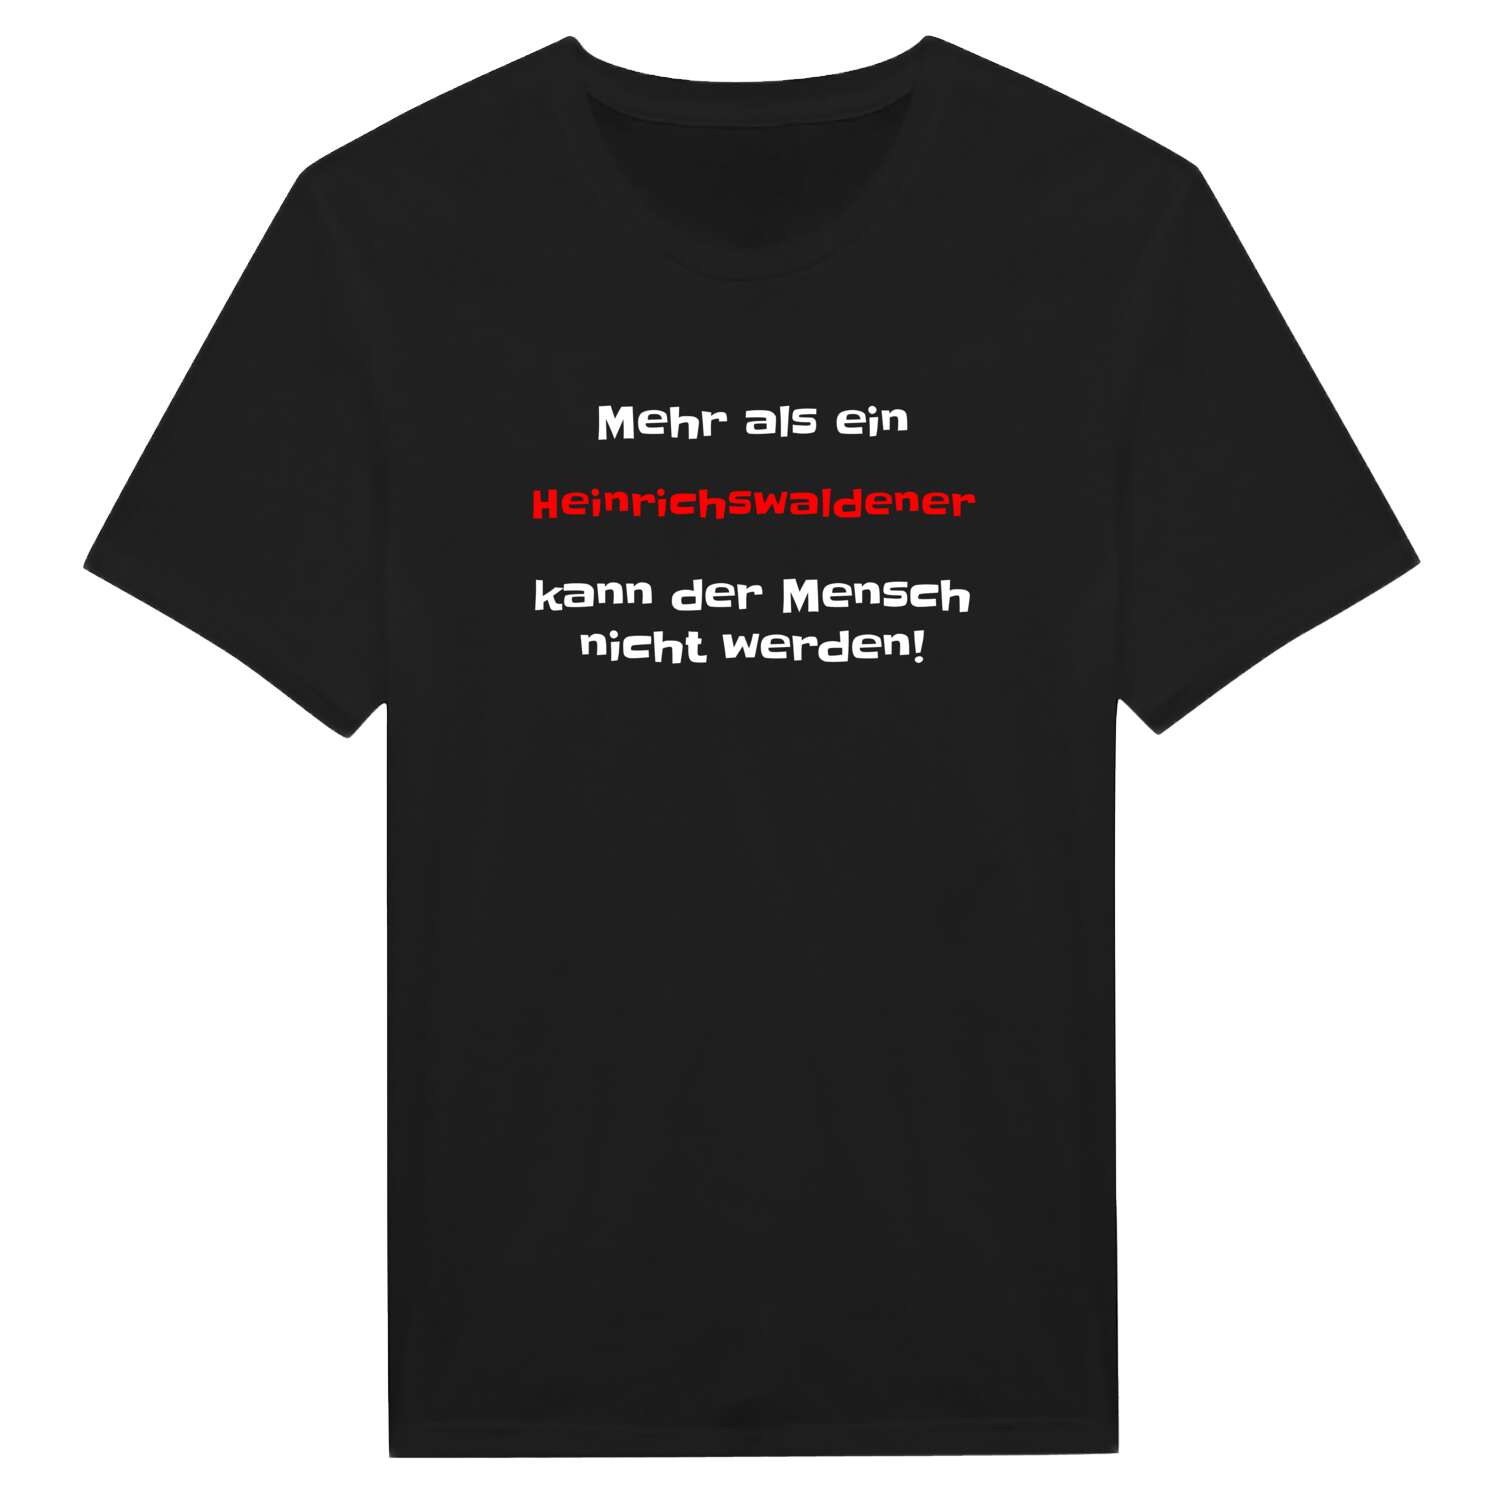 Heinrichswalde T-Shirt »Mehr als ein«